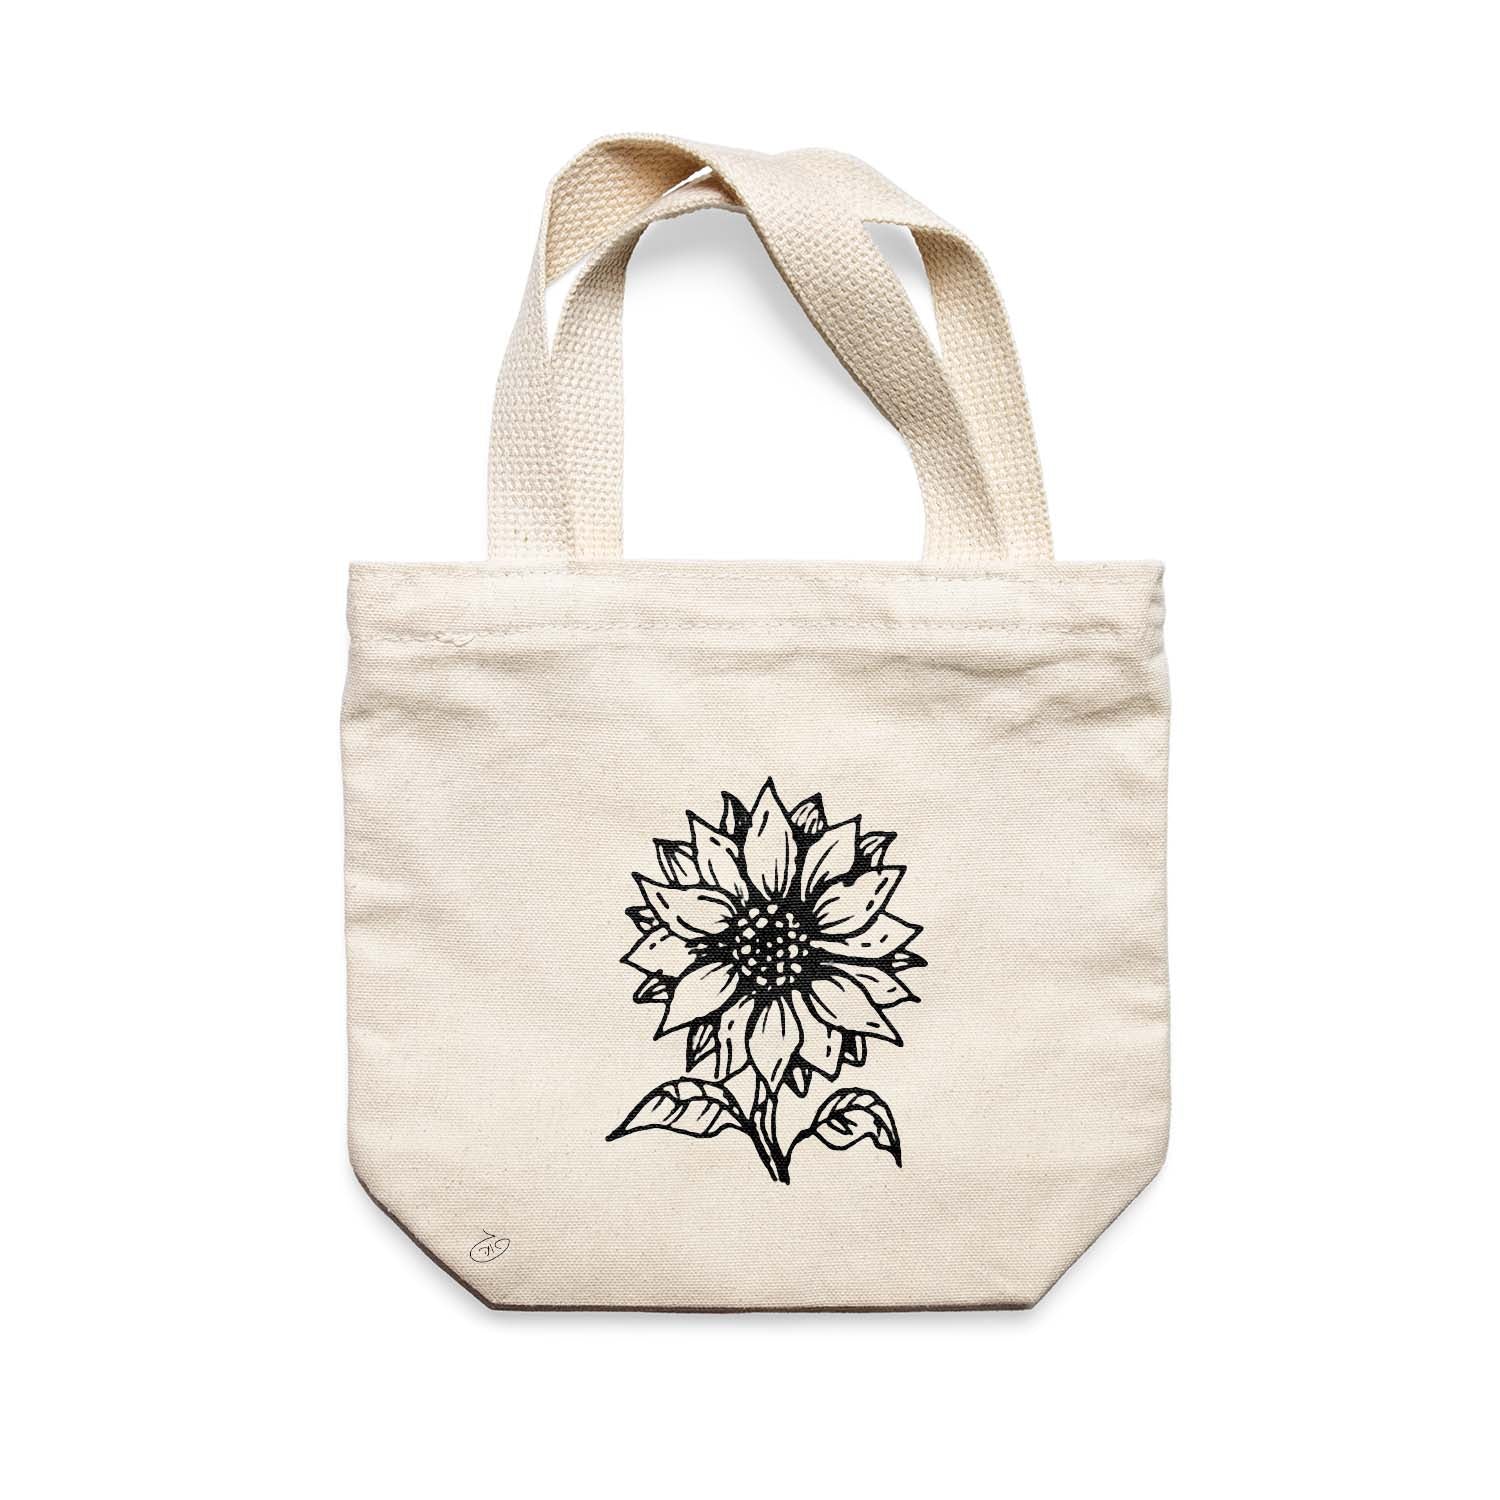 תיק צד לנשים וגברים מבד 100% כותנה טבעית בעיצוב Flower - Bella Tote Bag מציור מקורי של גאיה